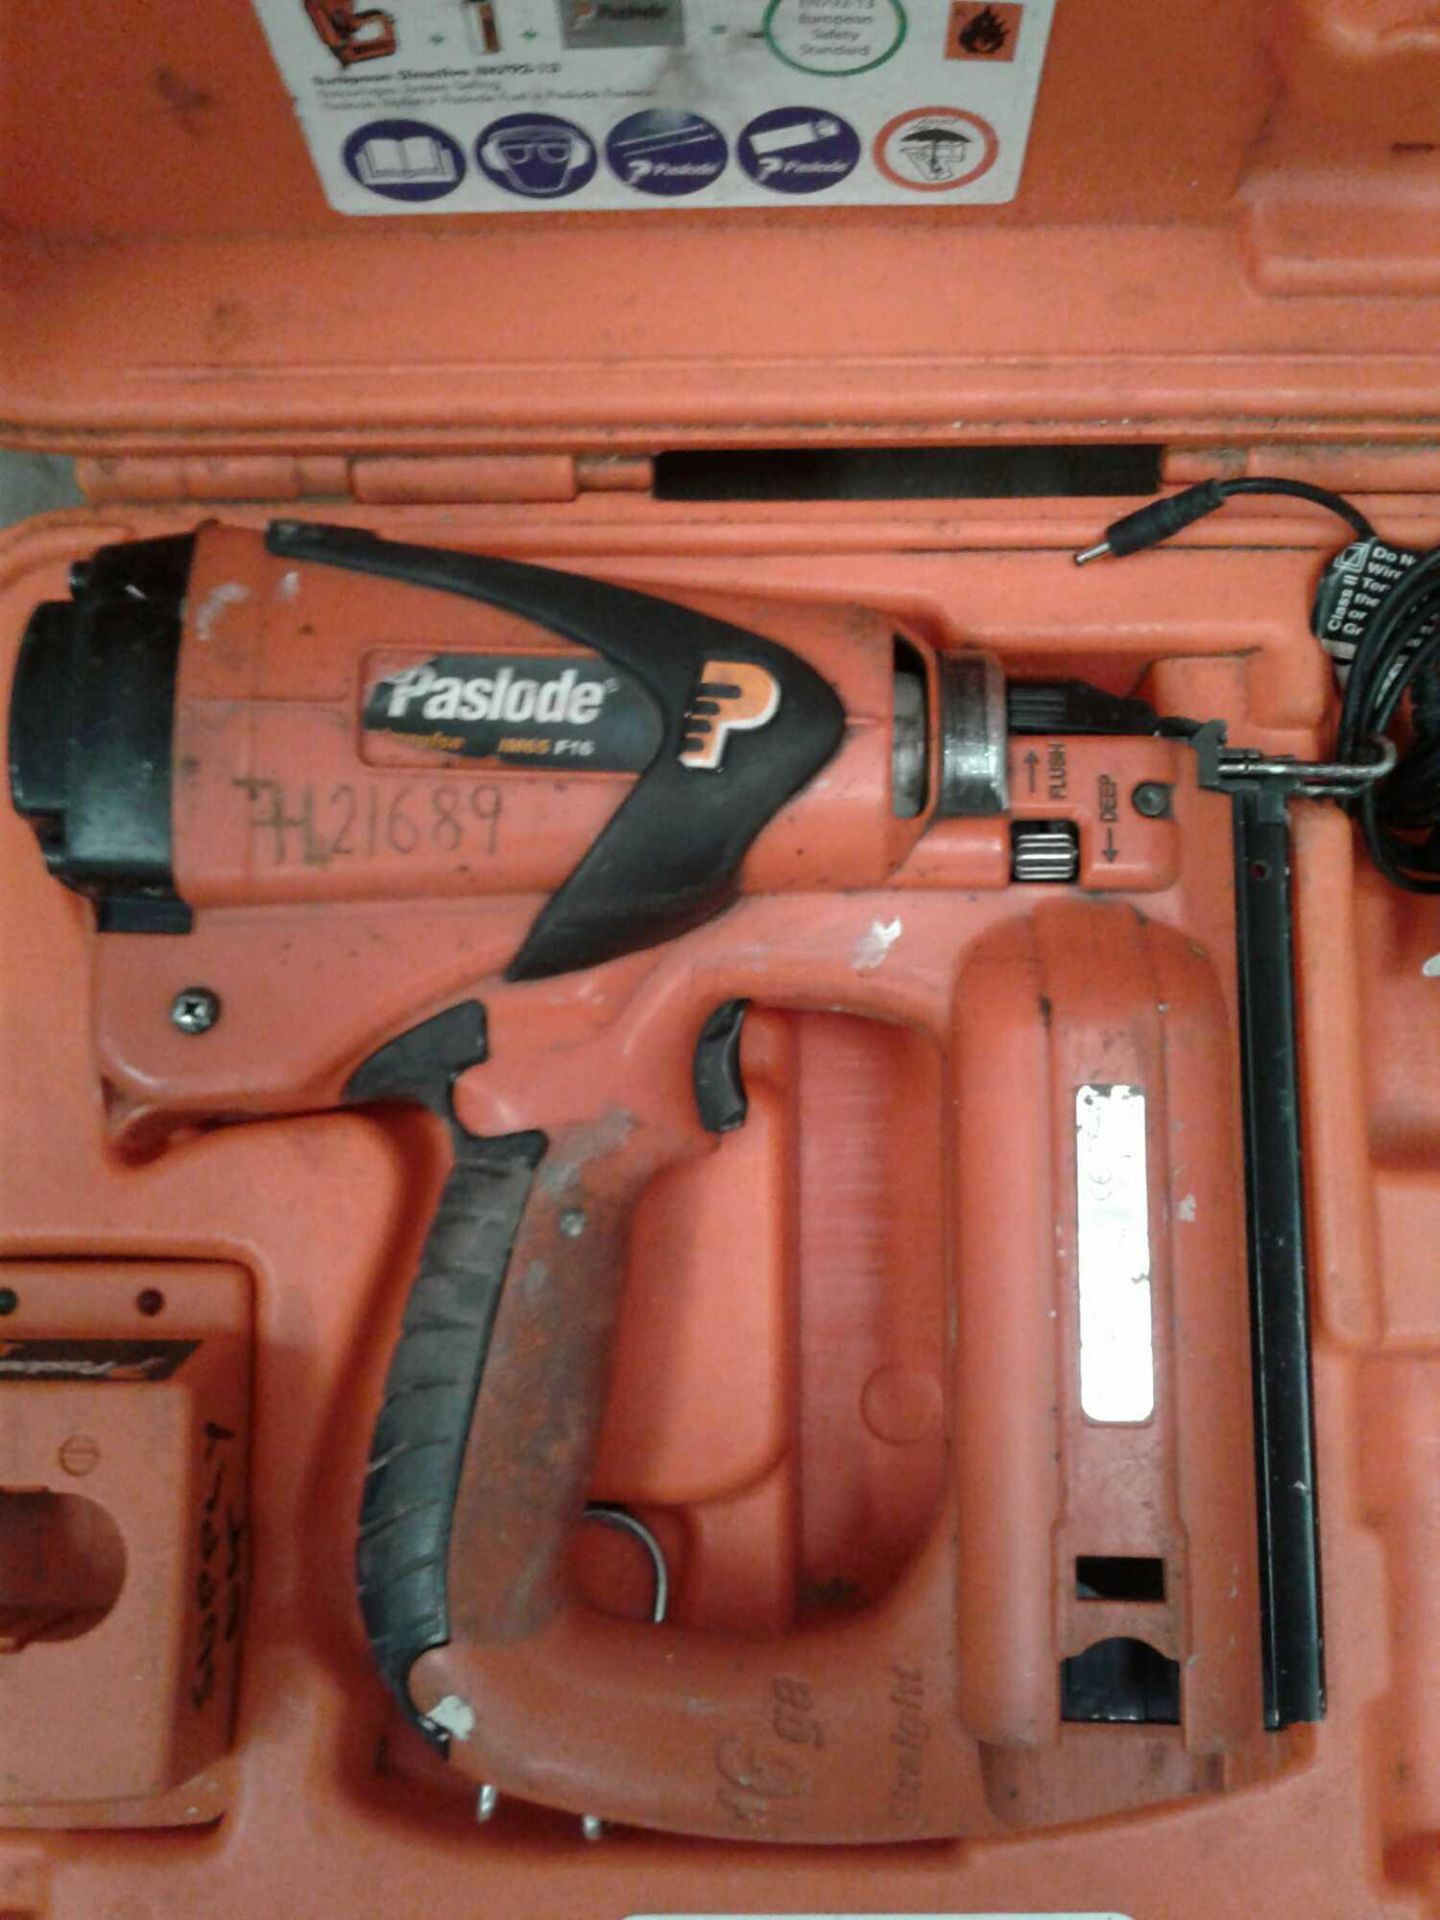 Paslode im65 F16 nail gun - Image 2 of 3